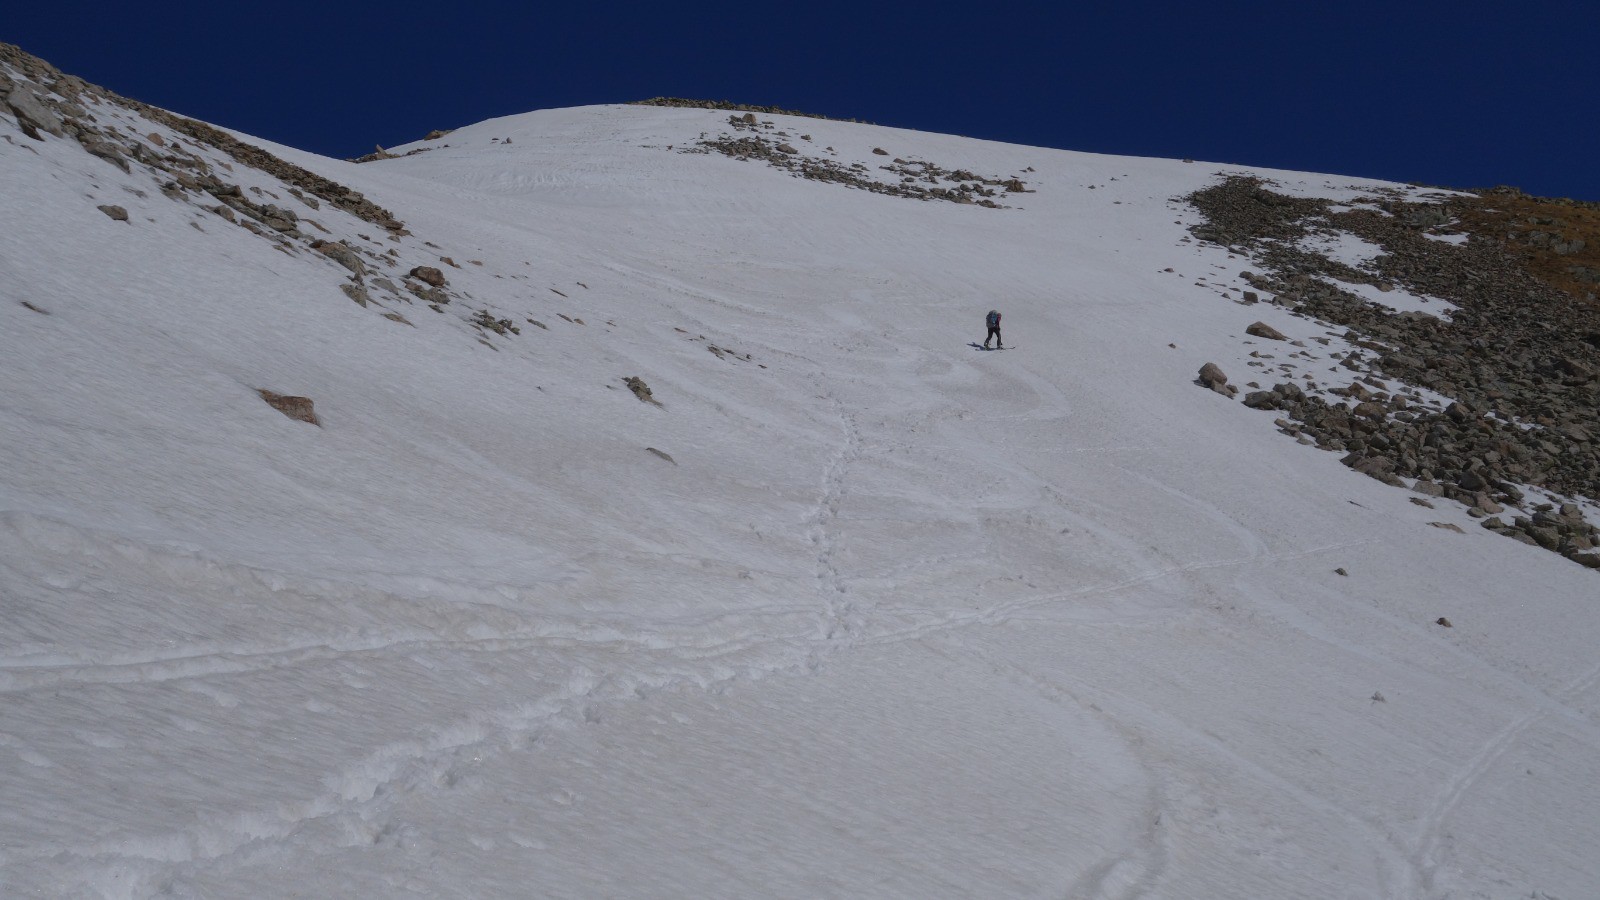 Puis à skis jusqu'au sommet